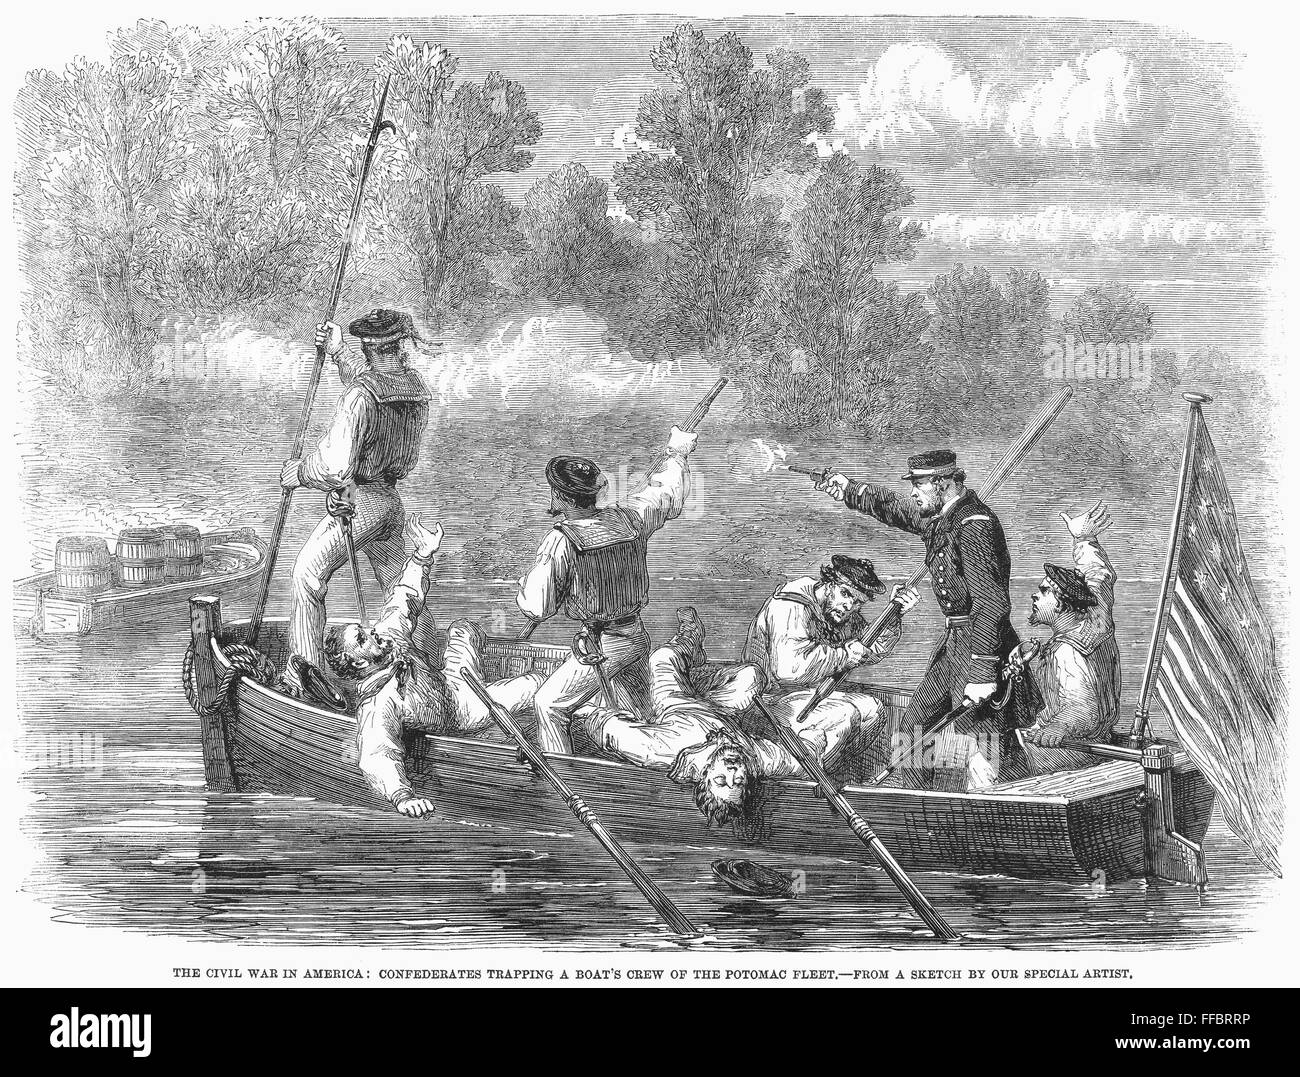 Guerra Civil: río Potomac. /NUnion marina de la tripulación del barco flota Potomac atrapados por fuerzas confederadas en el río Potomac, 1861. Grabado en madera de un periódico inglés contemporáneo. Foto de stock